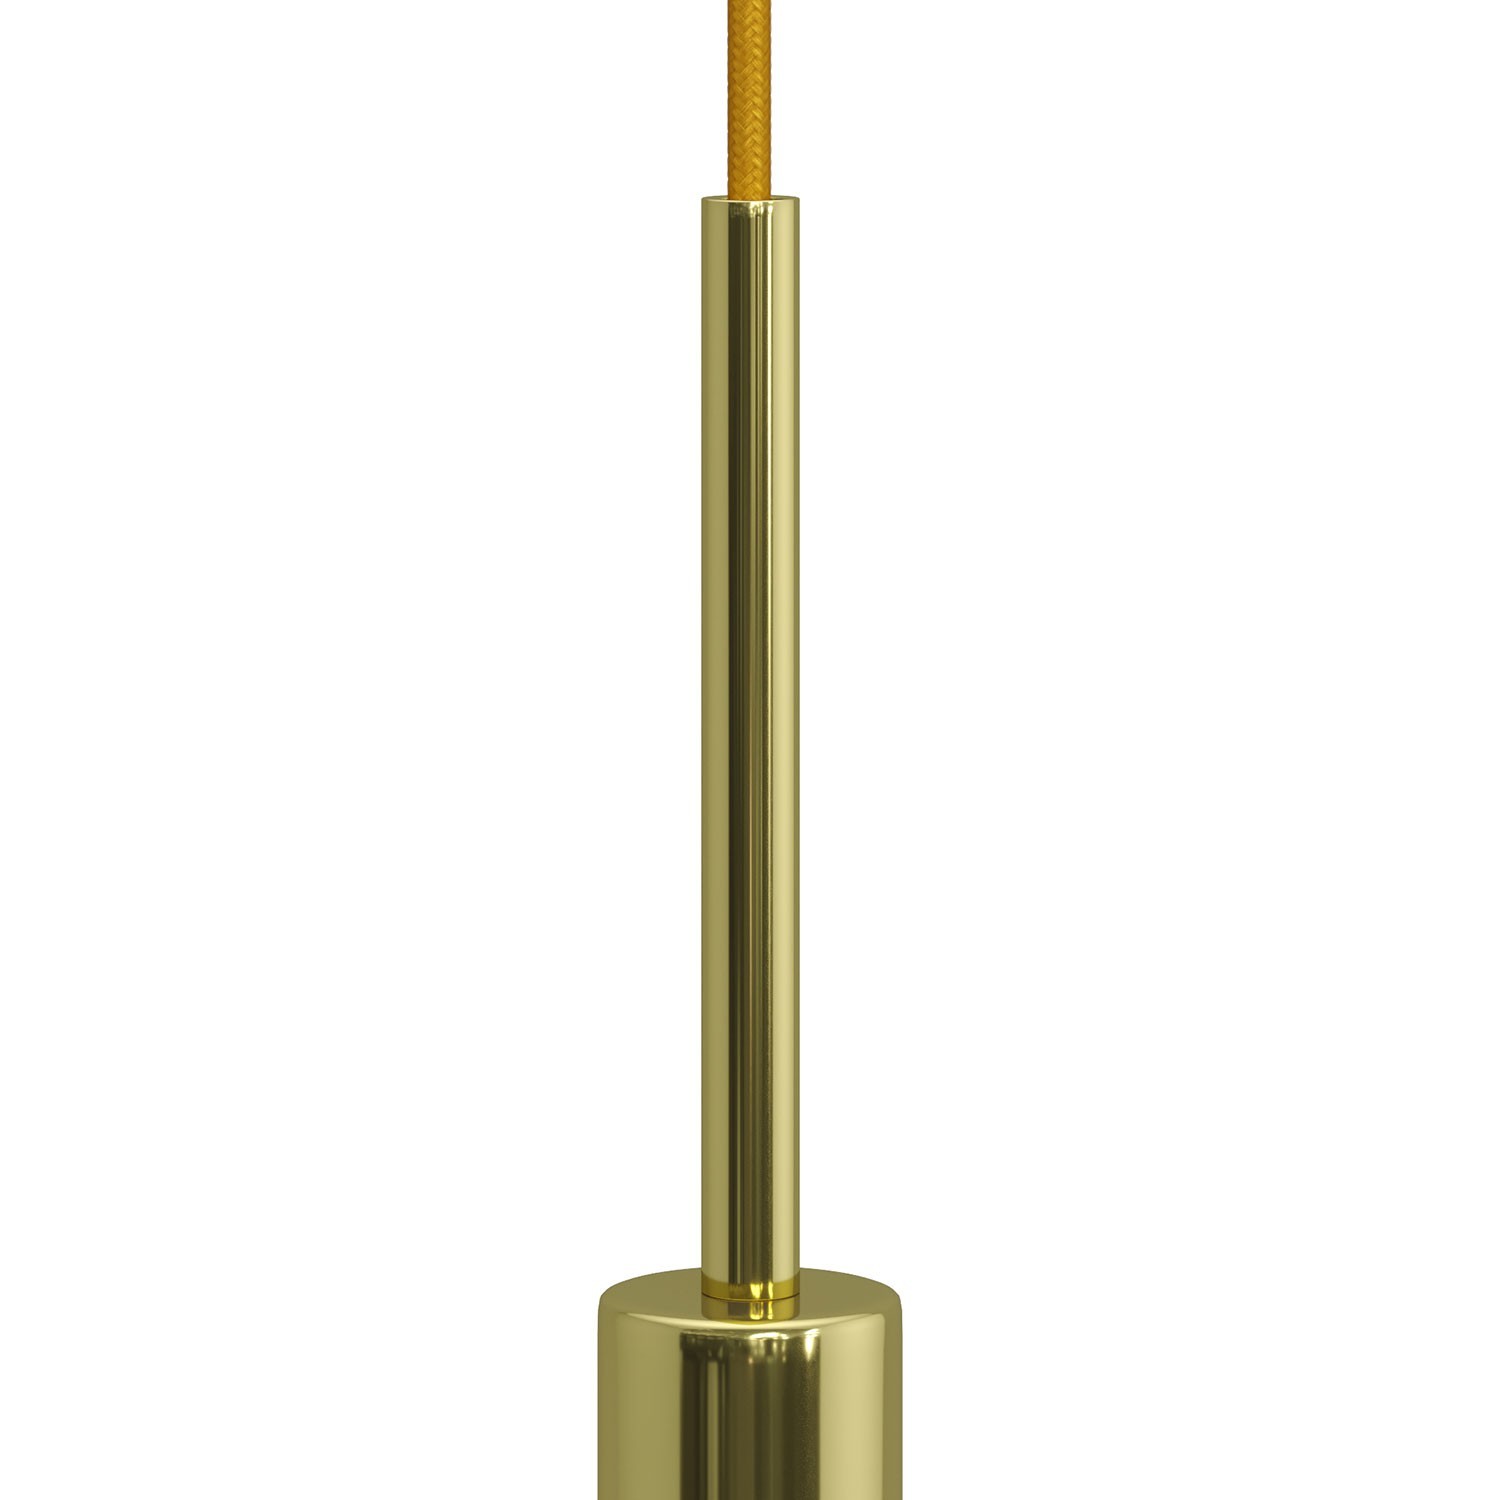 Valcová kovová káblová svorka so závitovou tyčkou, maticou a podložkou, dĺžka 15cm